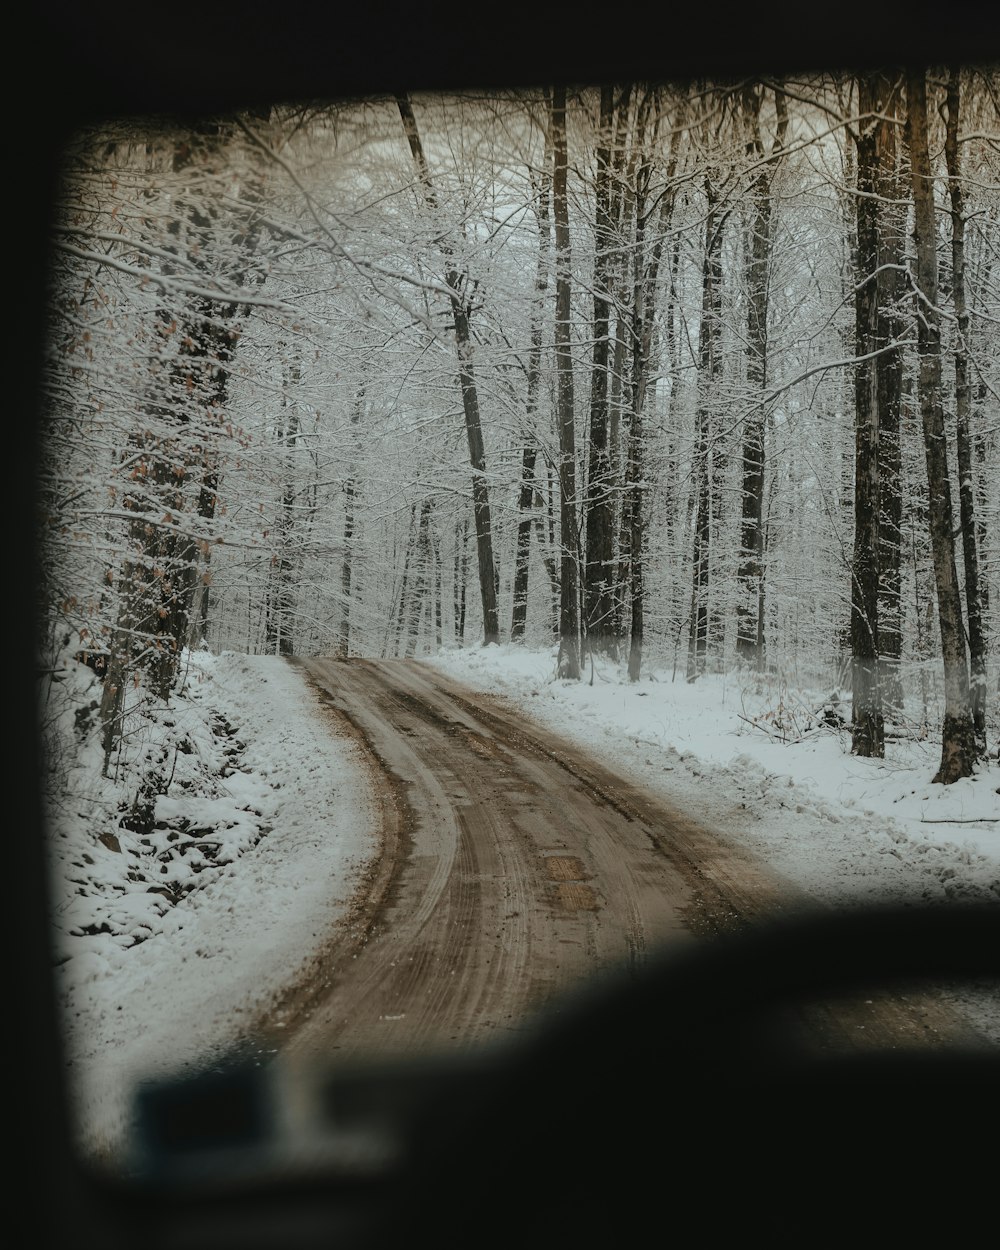 雪道を走る車